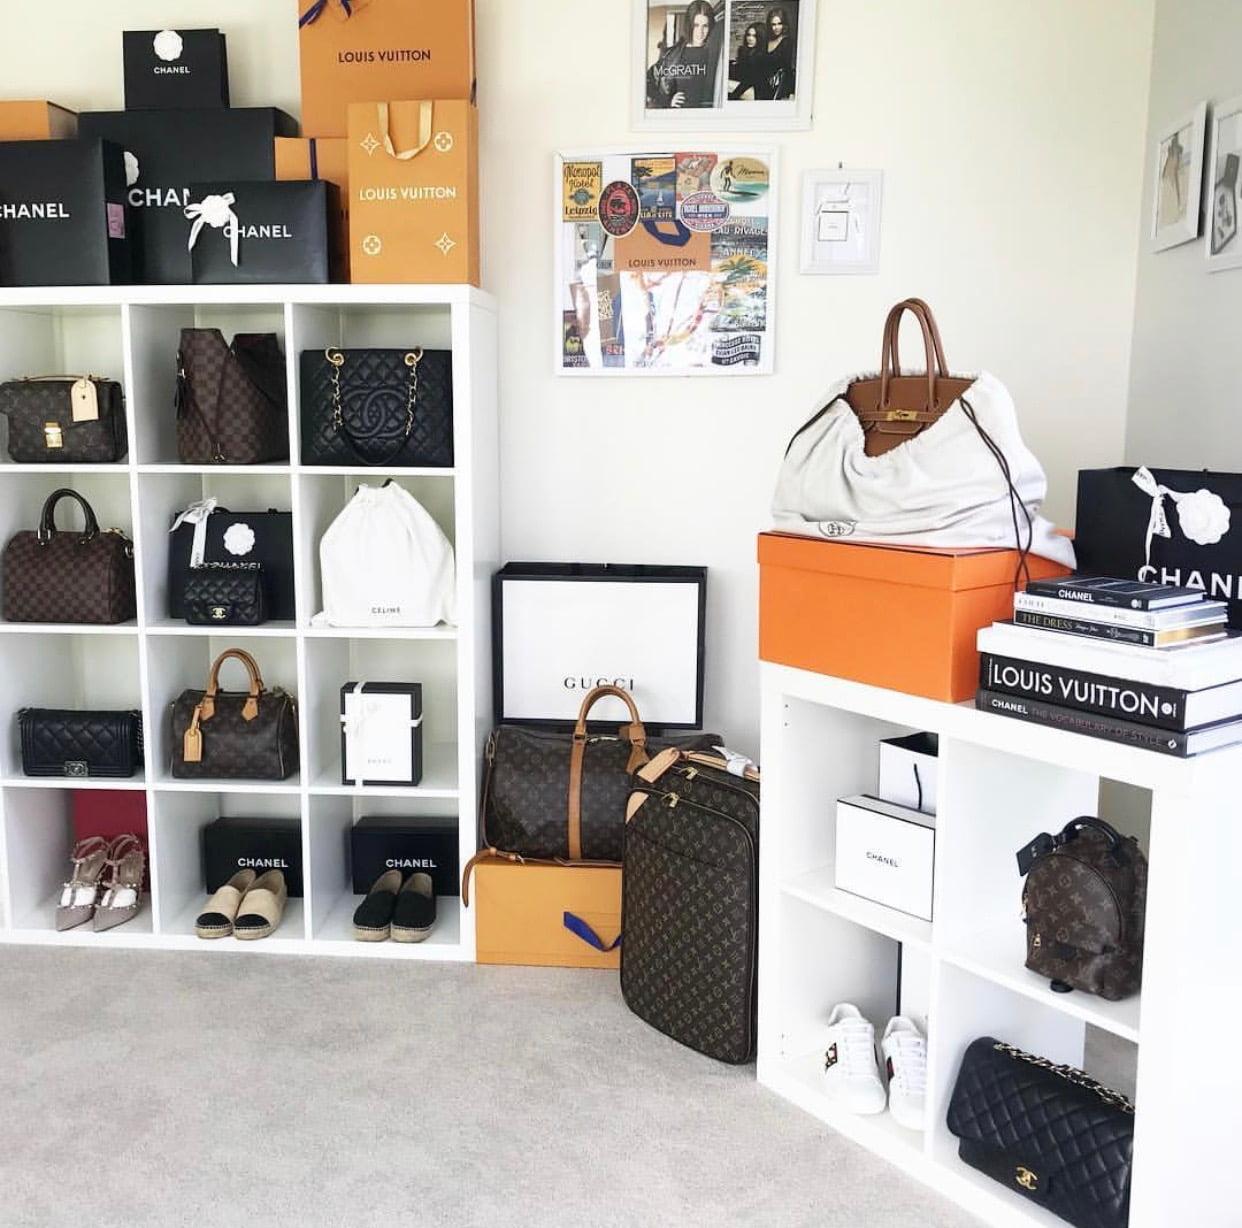 Rent Prada Designer Handbags - Bag Borrow Or Steal